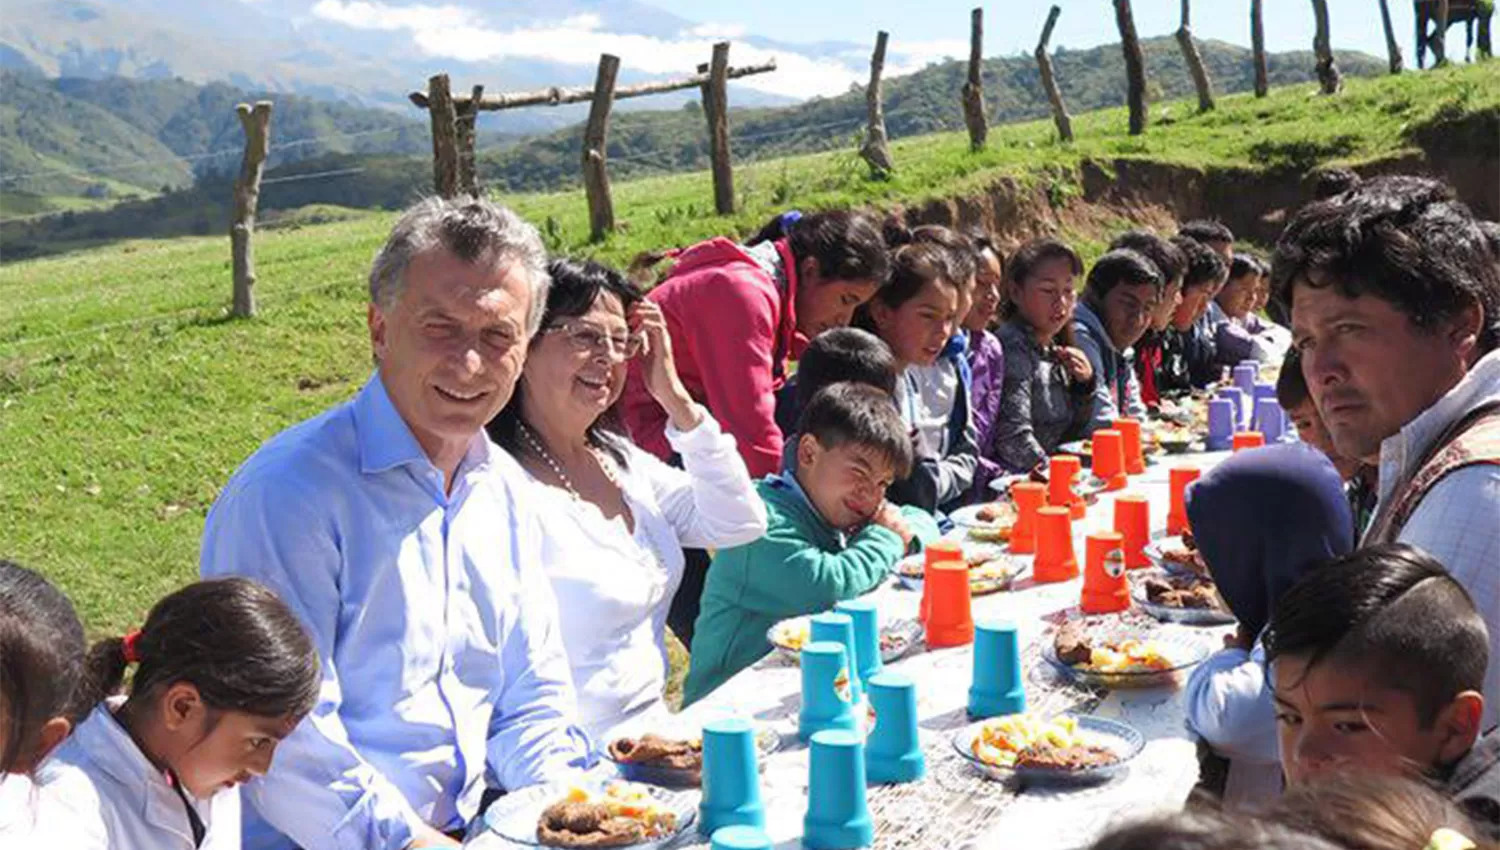 CON LOS ALUMNOS DE LA ESCUELA DE ANFAMA. Macri almorzó junto a los chicos. (FOTO TOMADA DEL FACEBOOK DE MAURICIO MACRI)